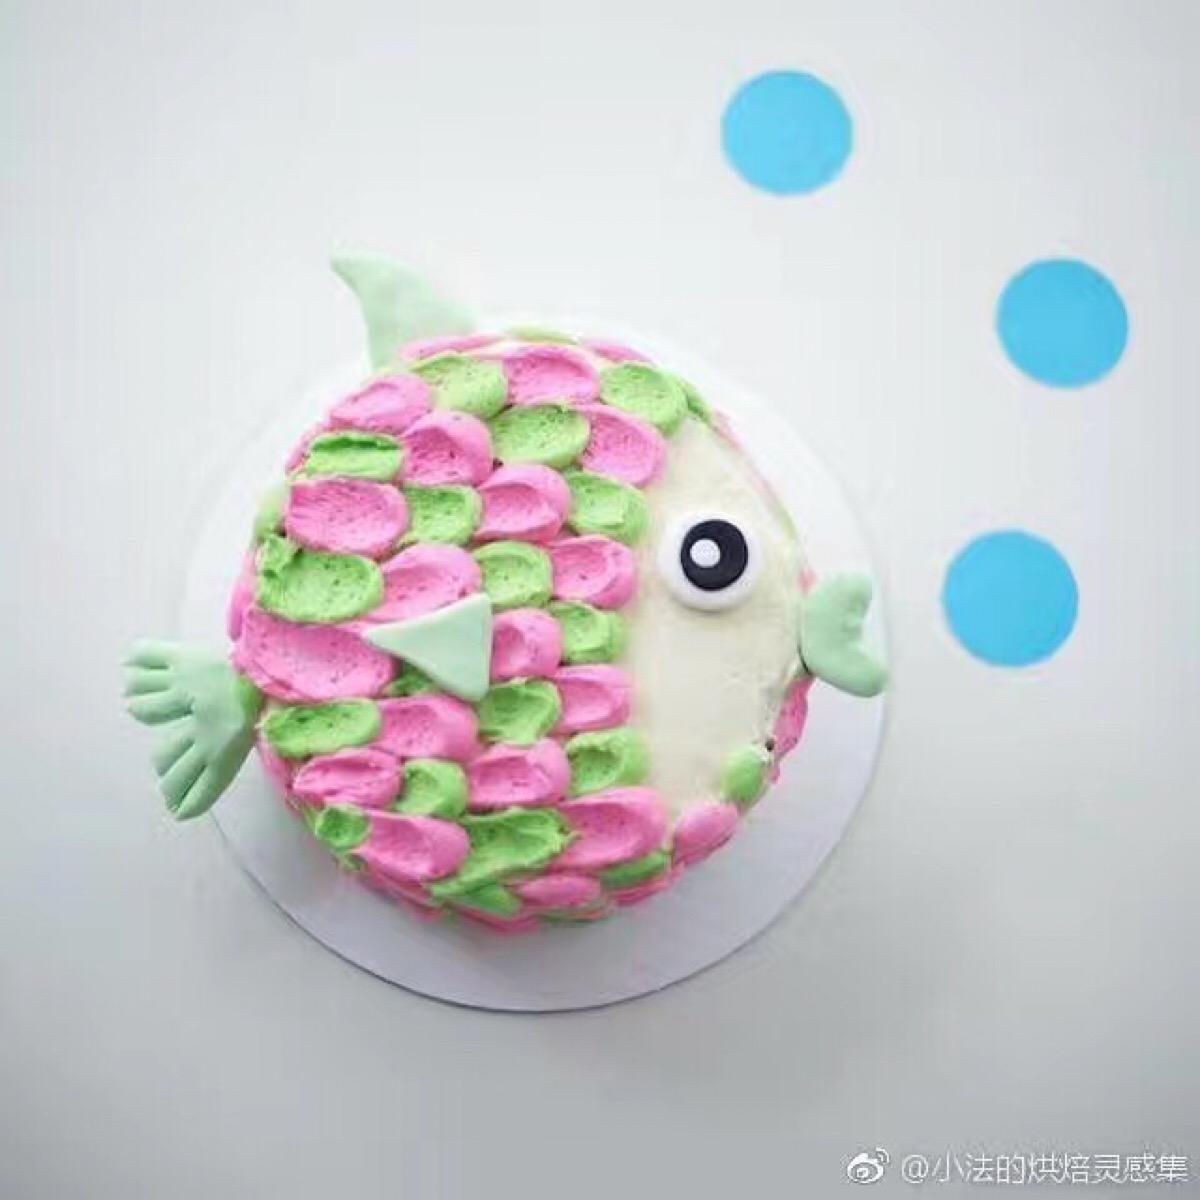 美人鱼造型蛋糕怎么做_美人鱼造型蛋糕的做法_小黠大痴_豆果美食